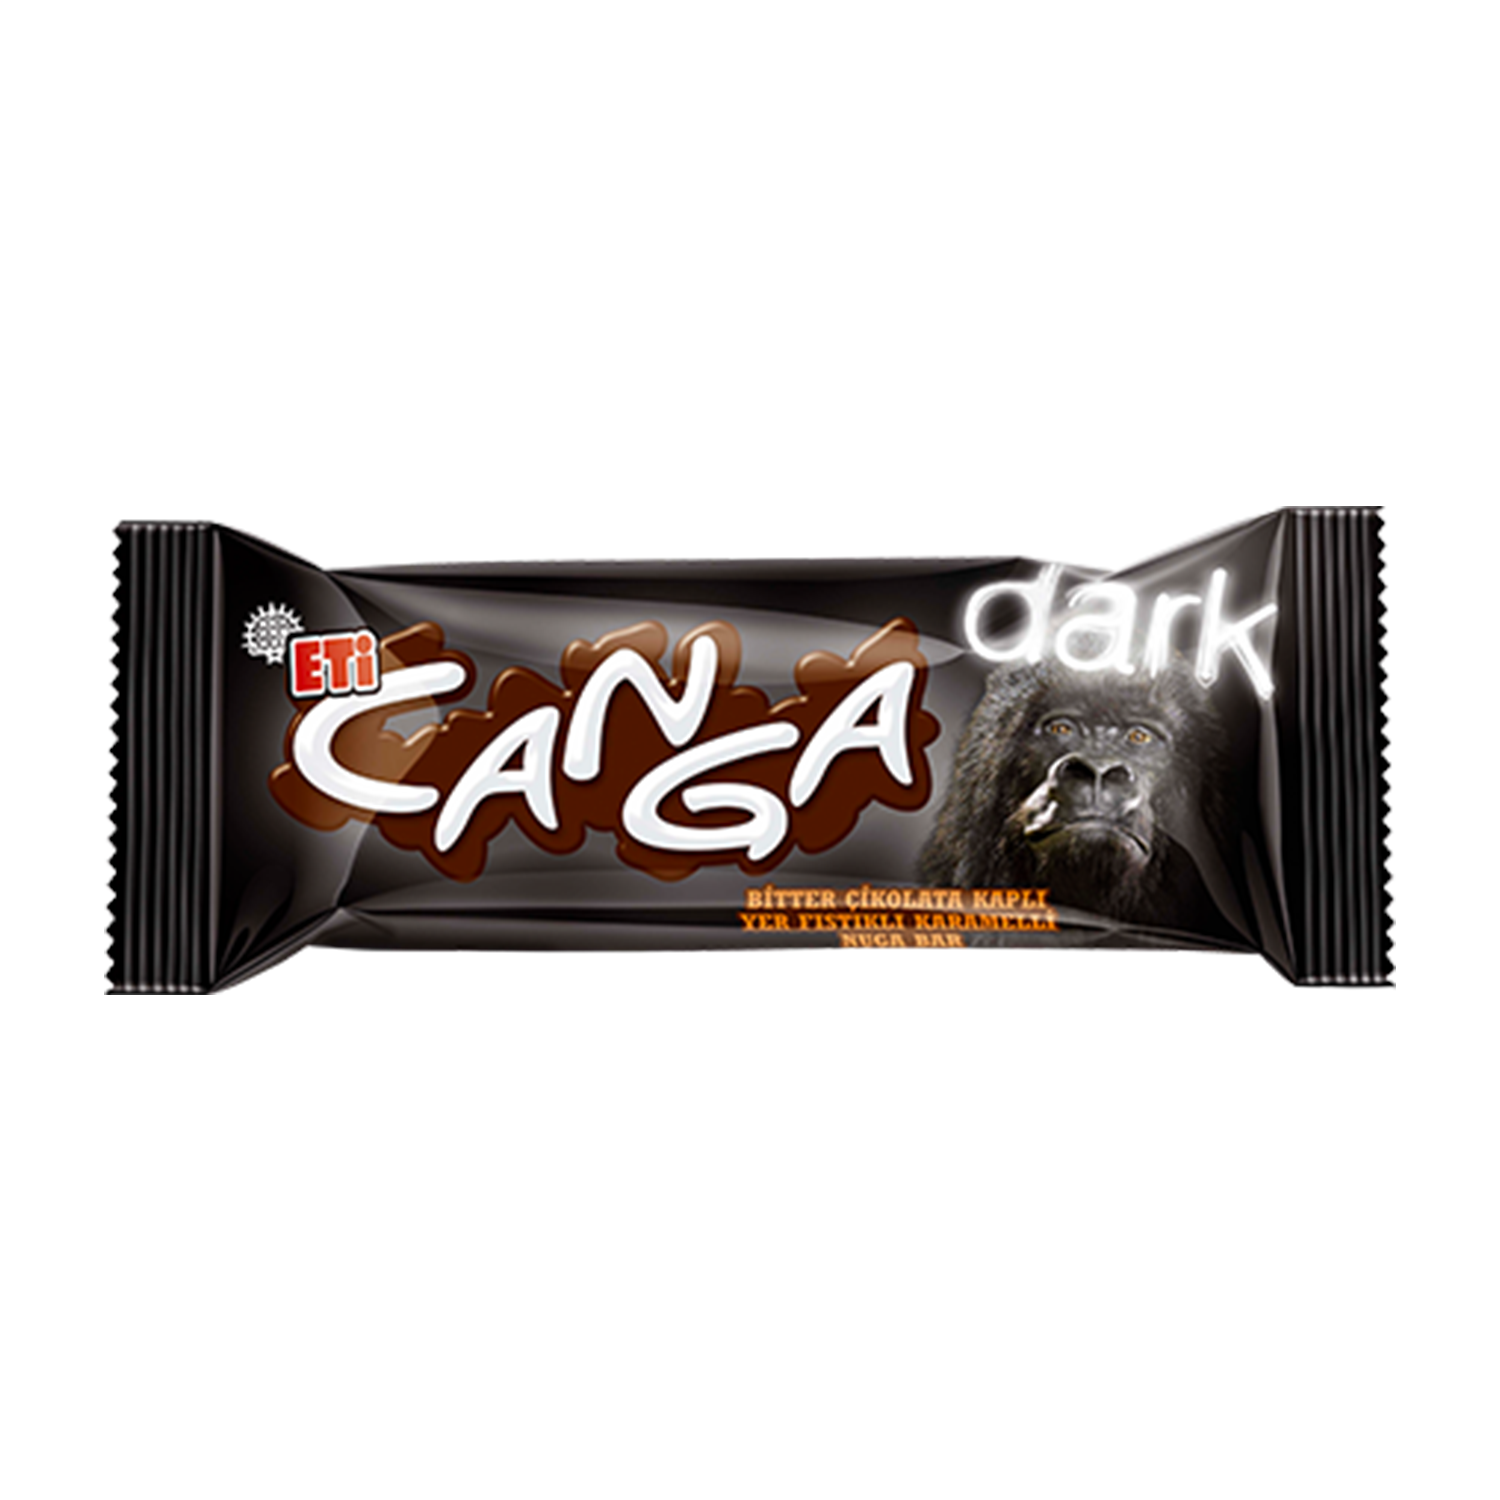 Eti Canga Dark 45 GR Bar